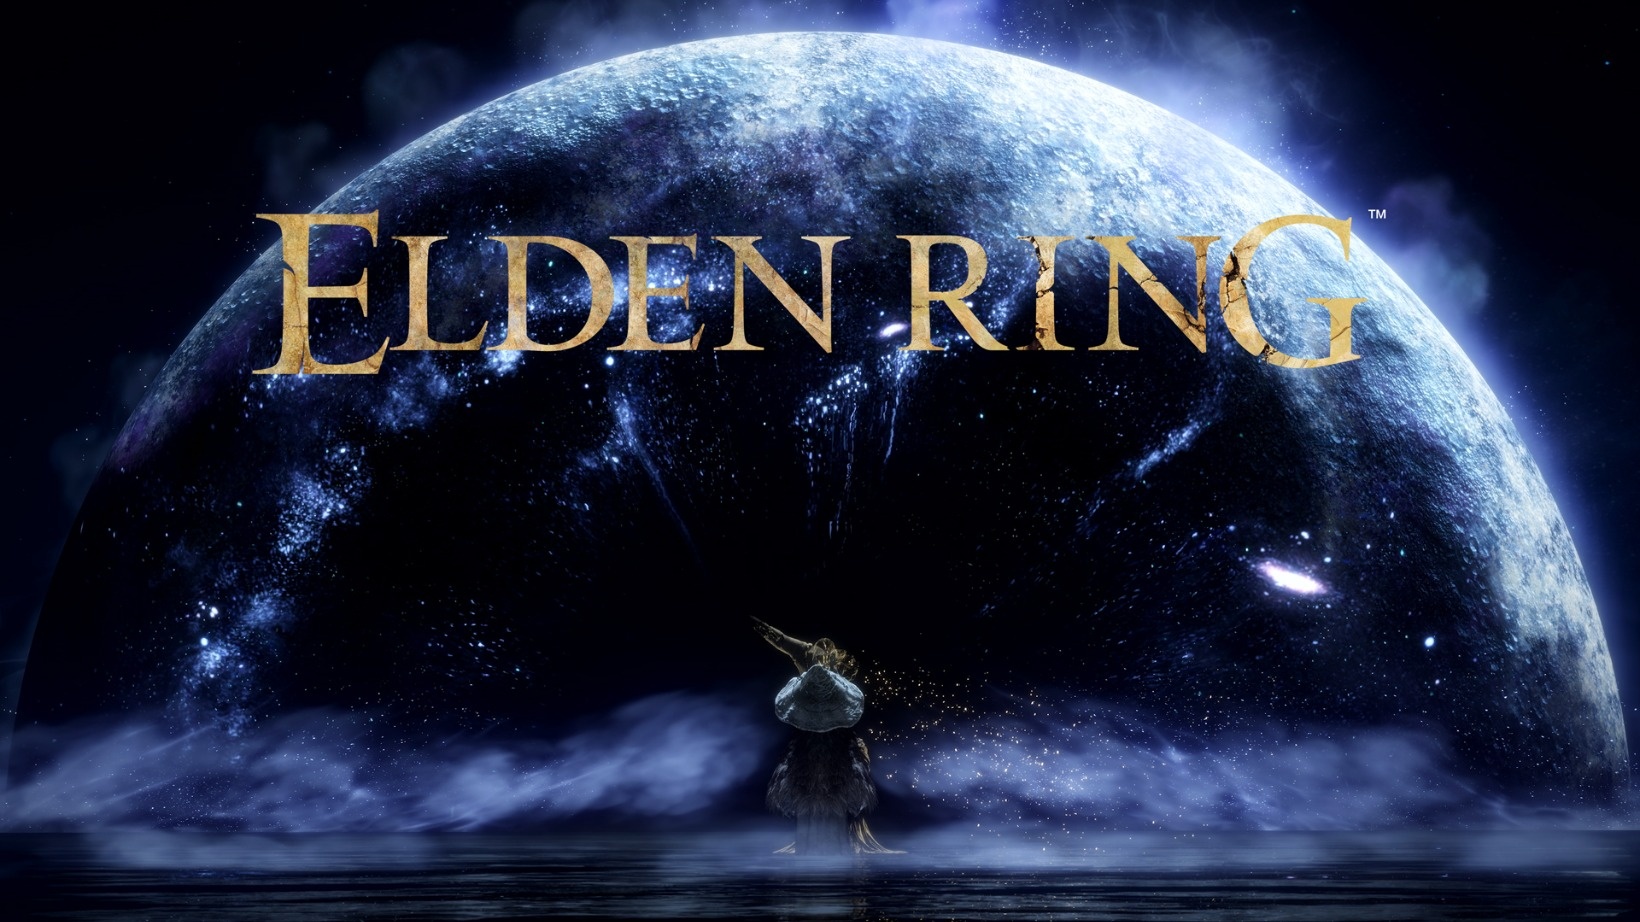 ELDEN RING 発売ロンチトレーラー【2022年2月25日発売】